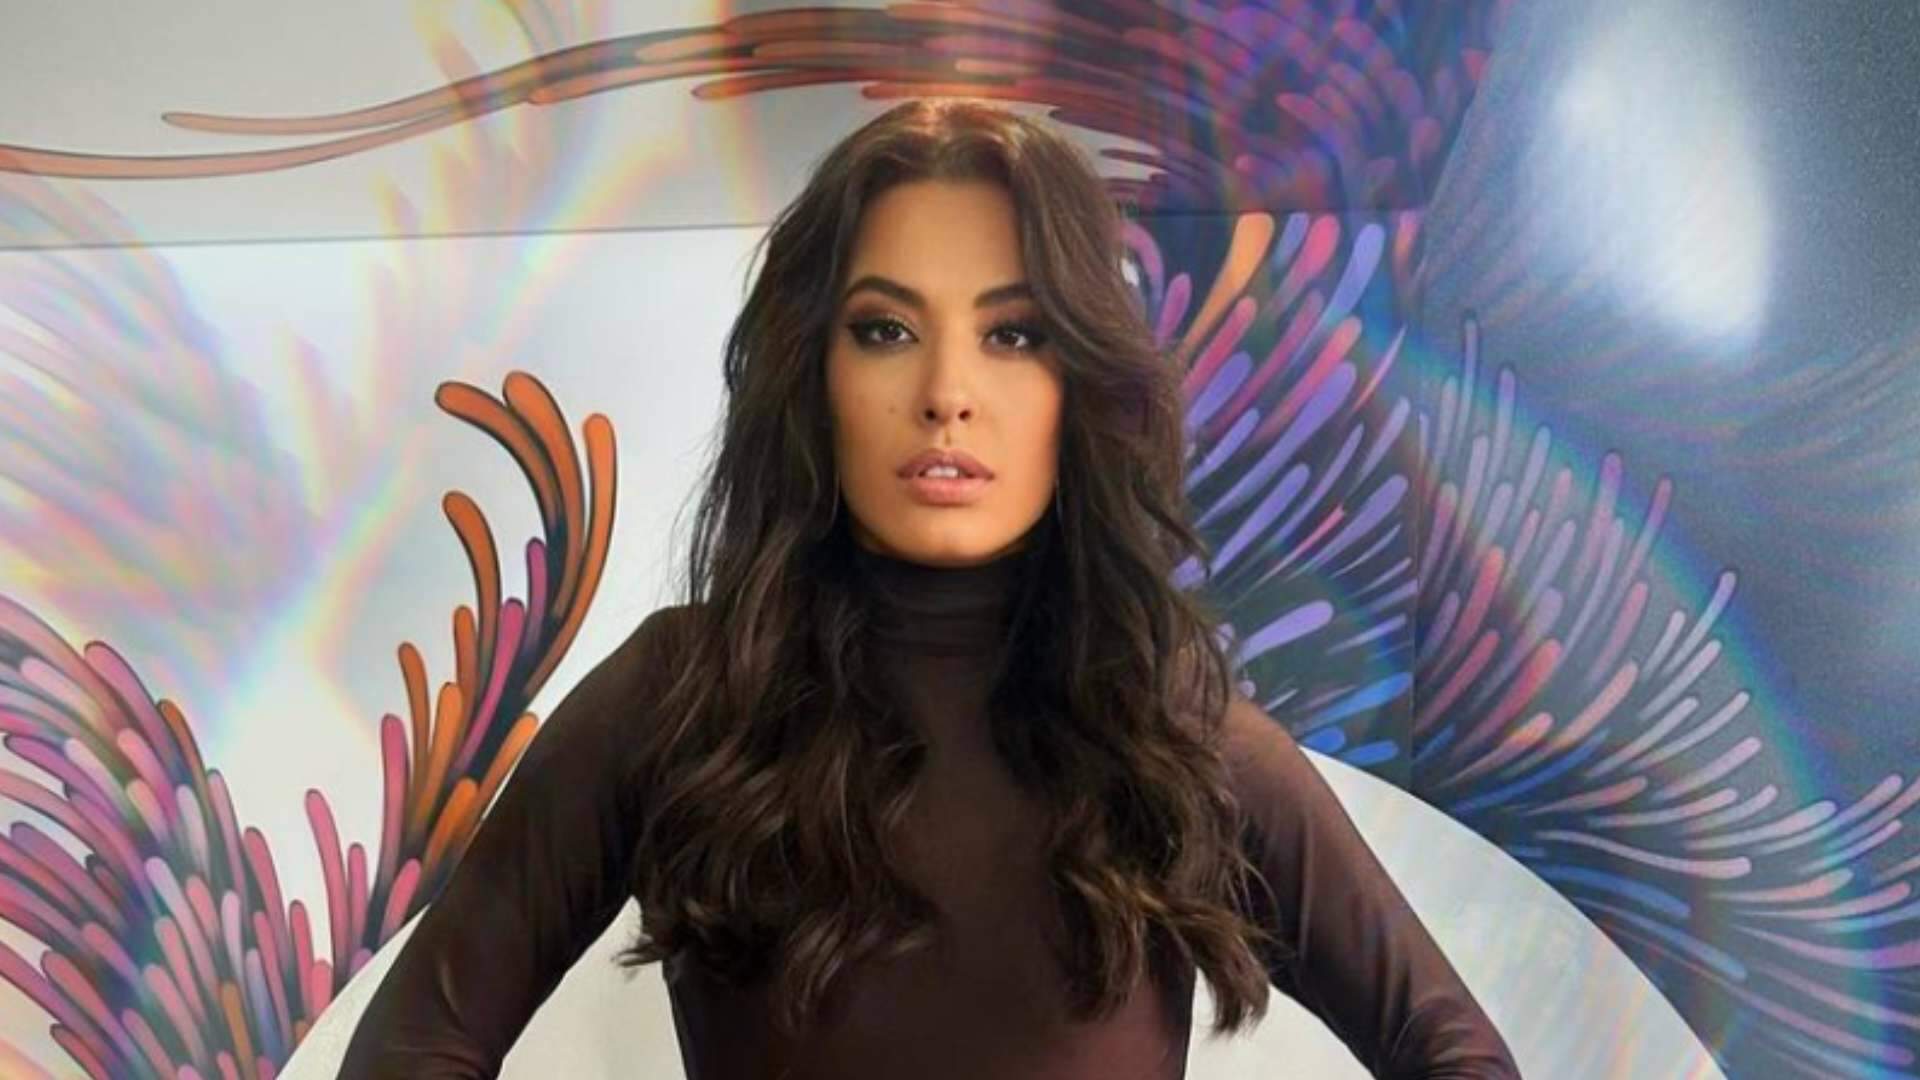 Programa de moda? Beatriz Reis revela detalhes de sua preparação para apresentar nova atração na Globo